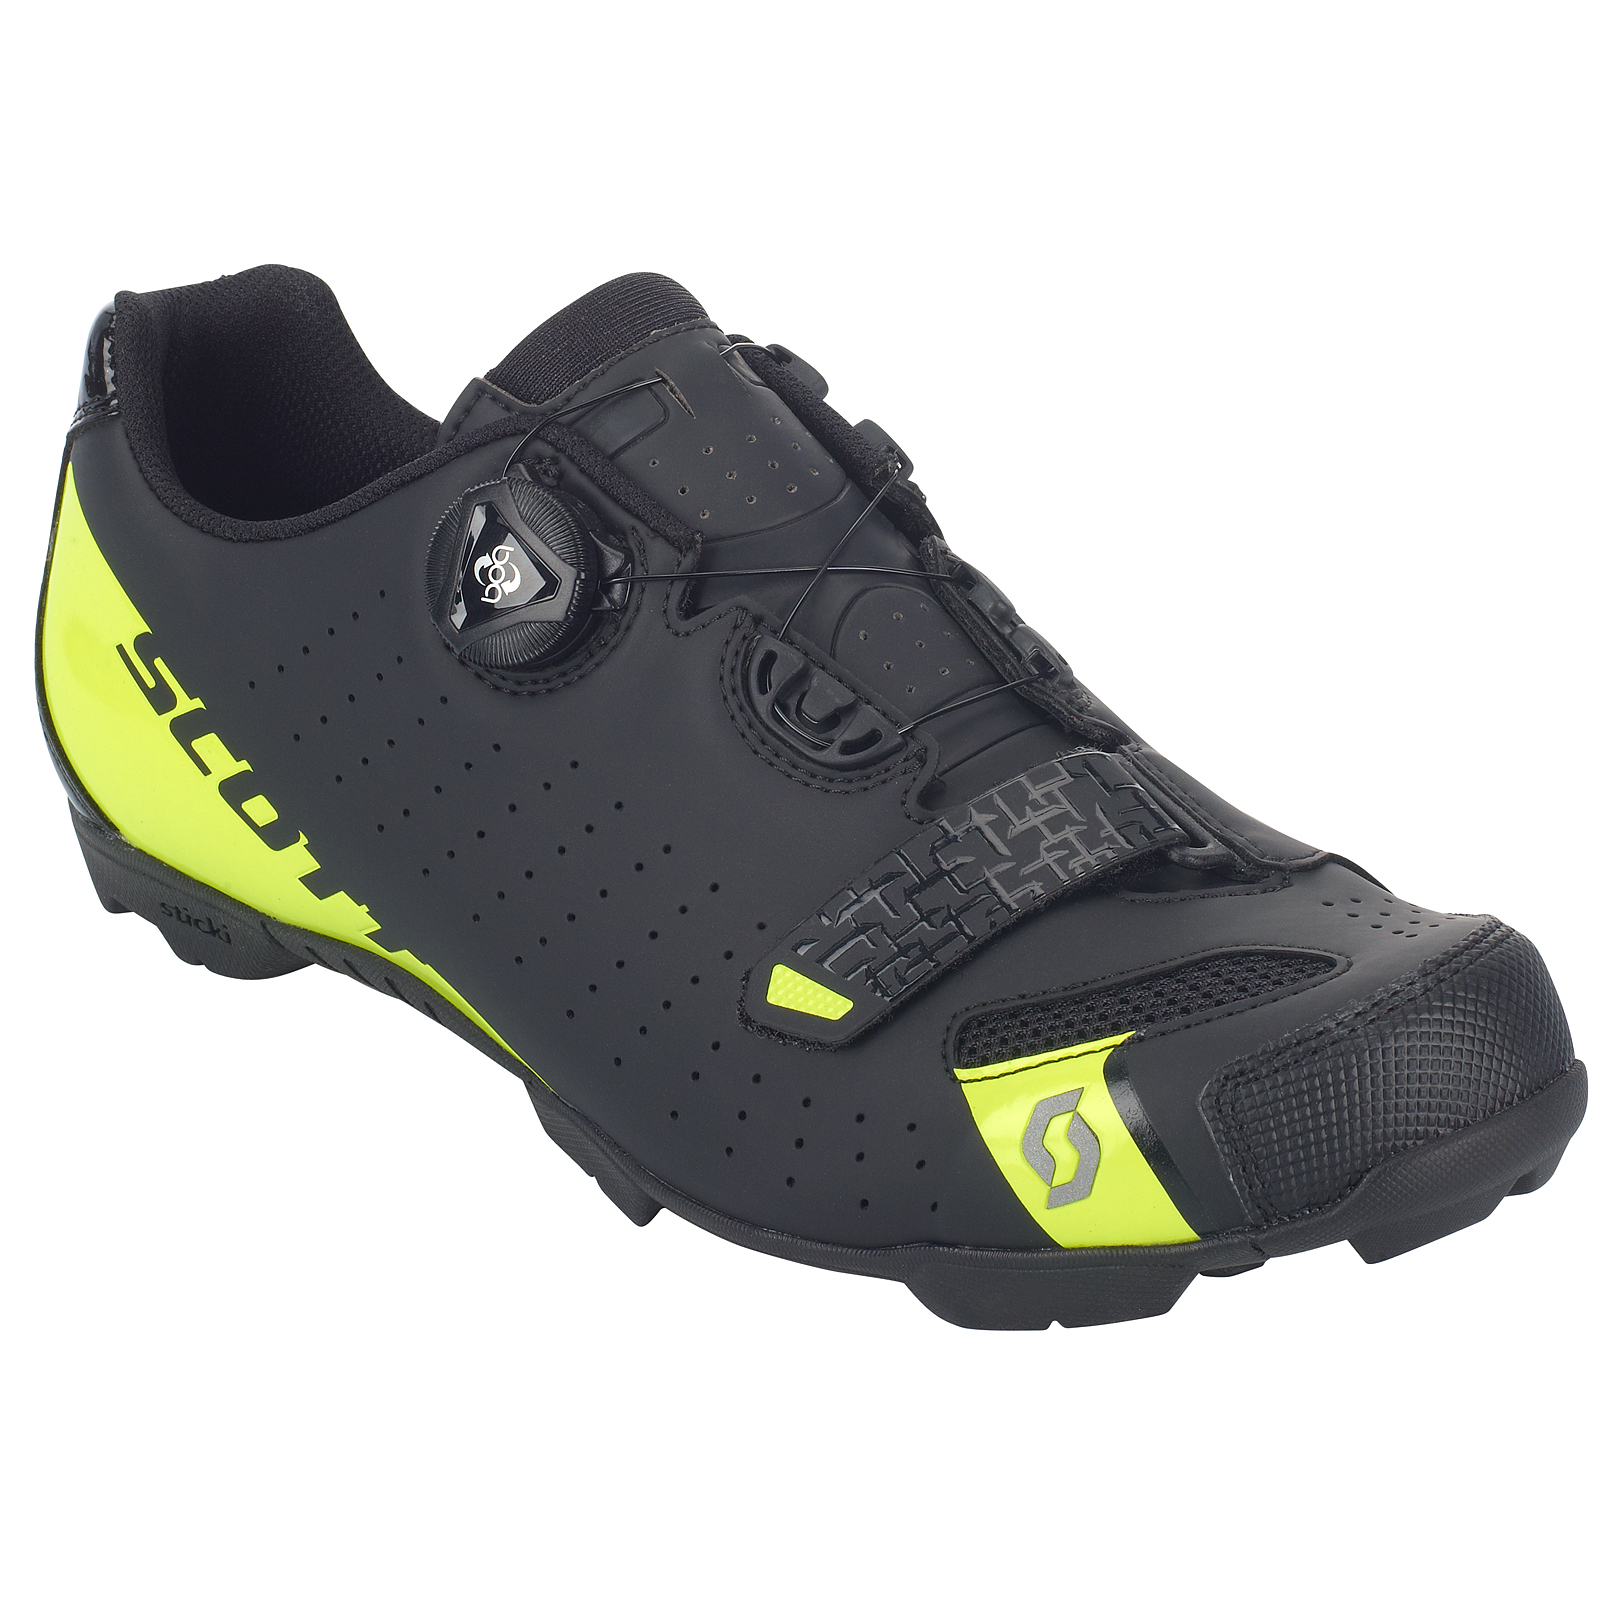 Scott MTB Comp Boa Fahrrad Schuhe schwarz/gelb 2019 von